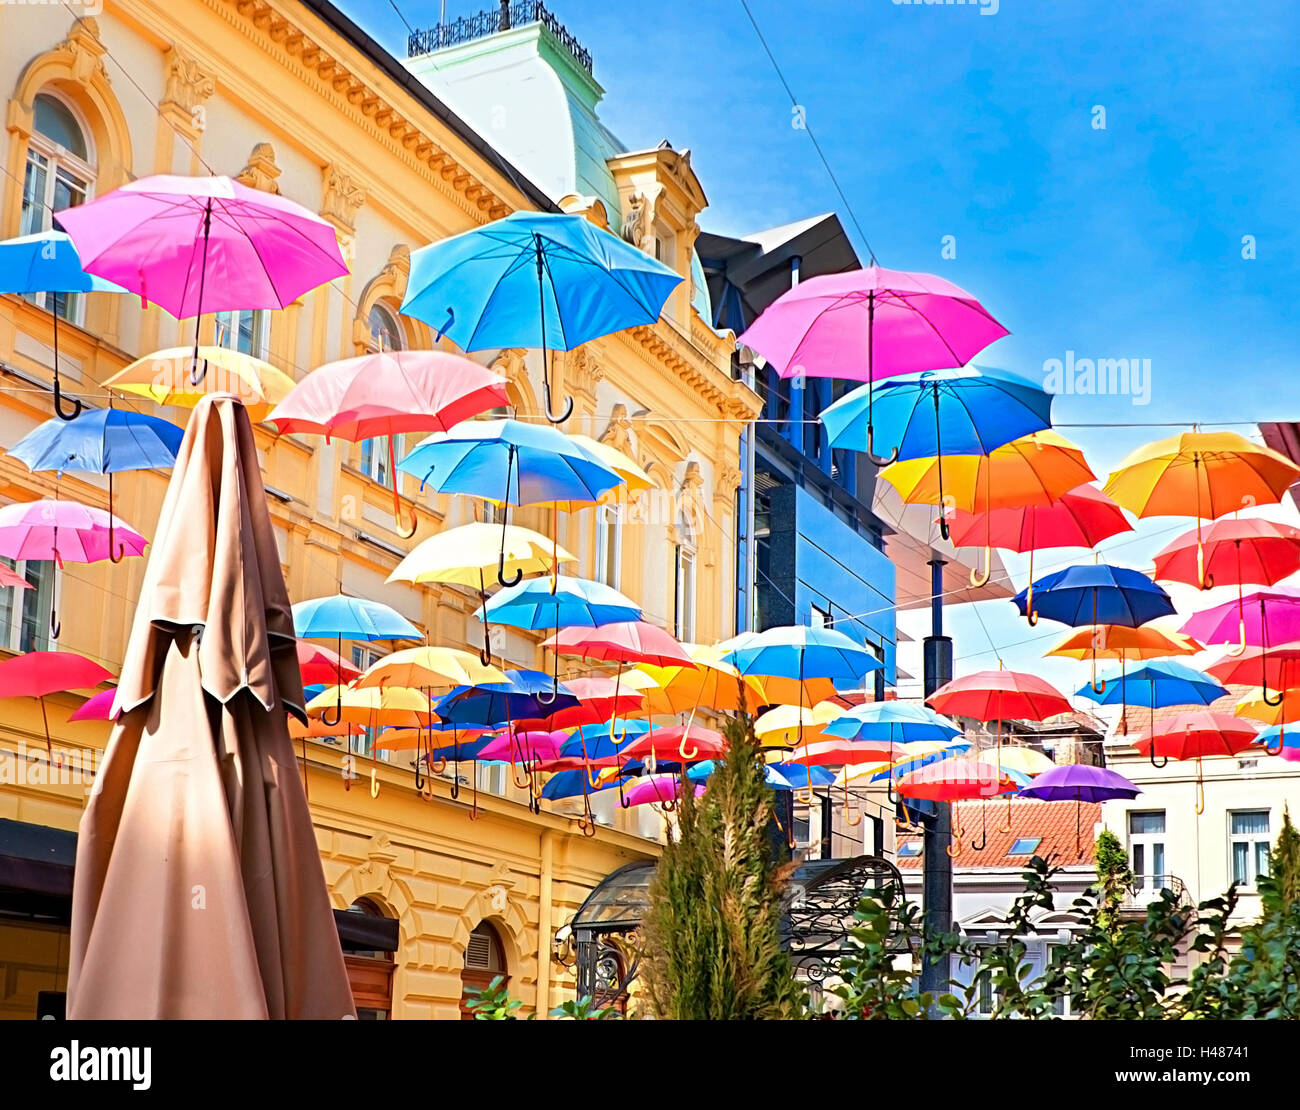 Il grande ombrello chiuso con molti piccoli ombrelli aperti sullo sfondo, Belgrado, Serbia. Foto Stock